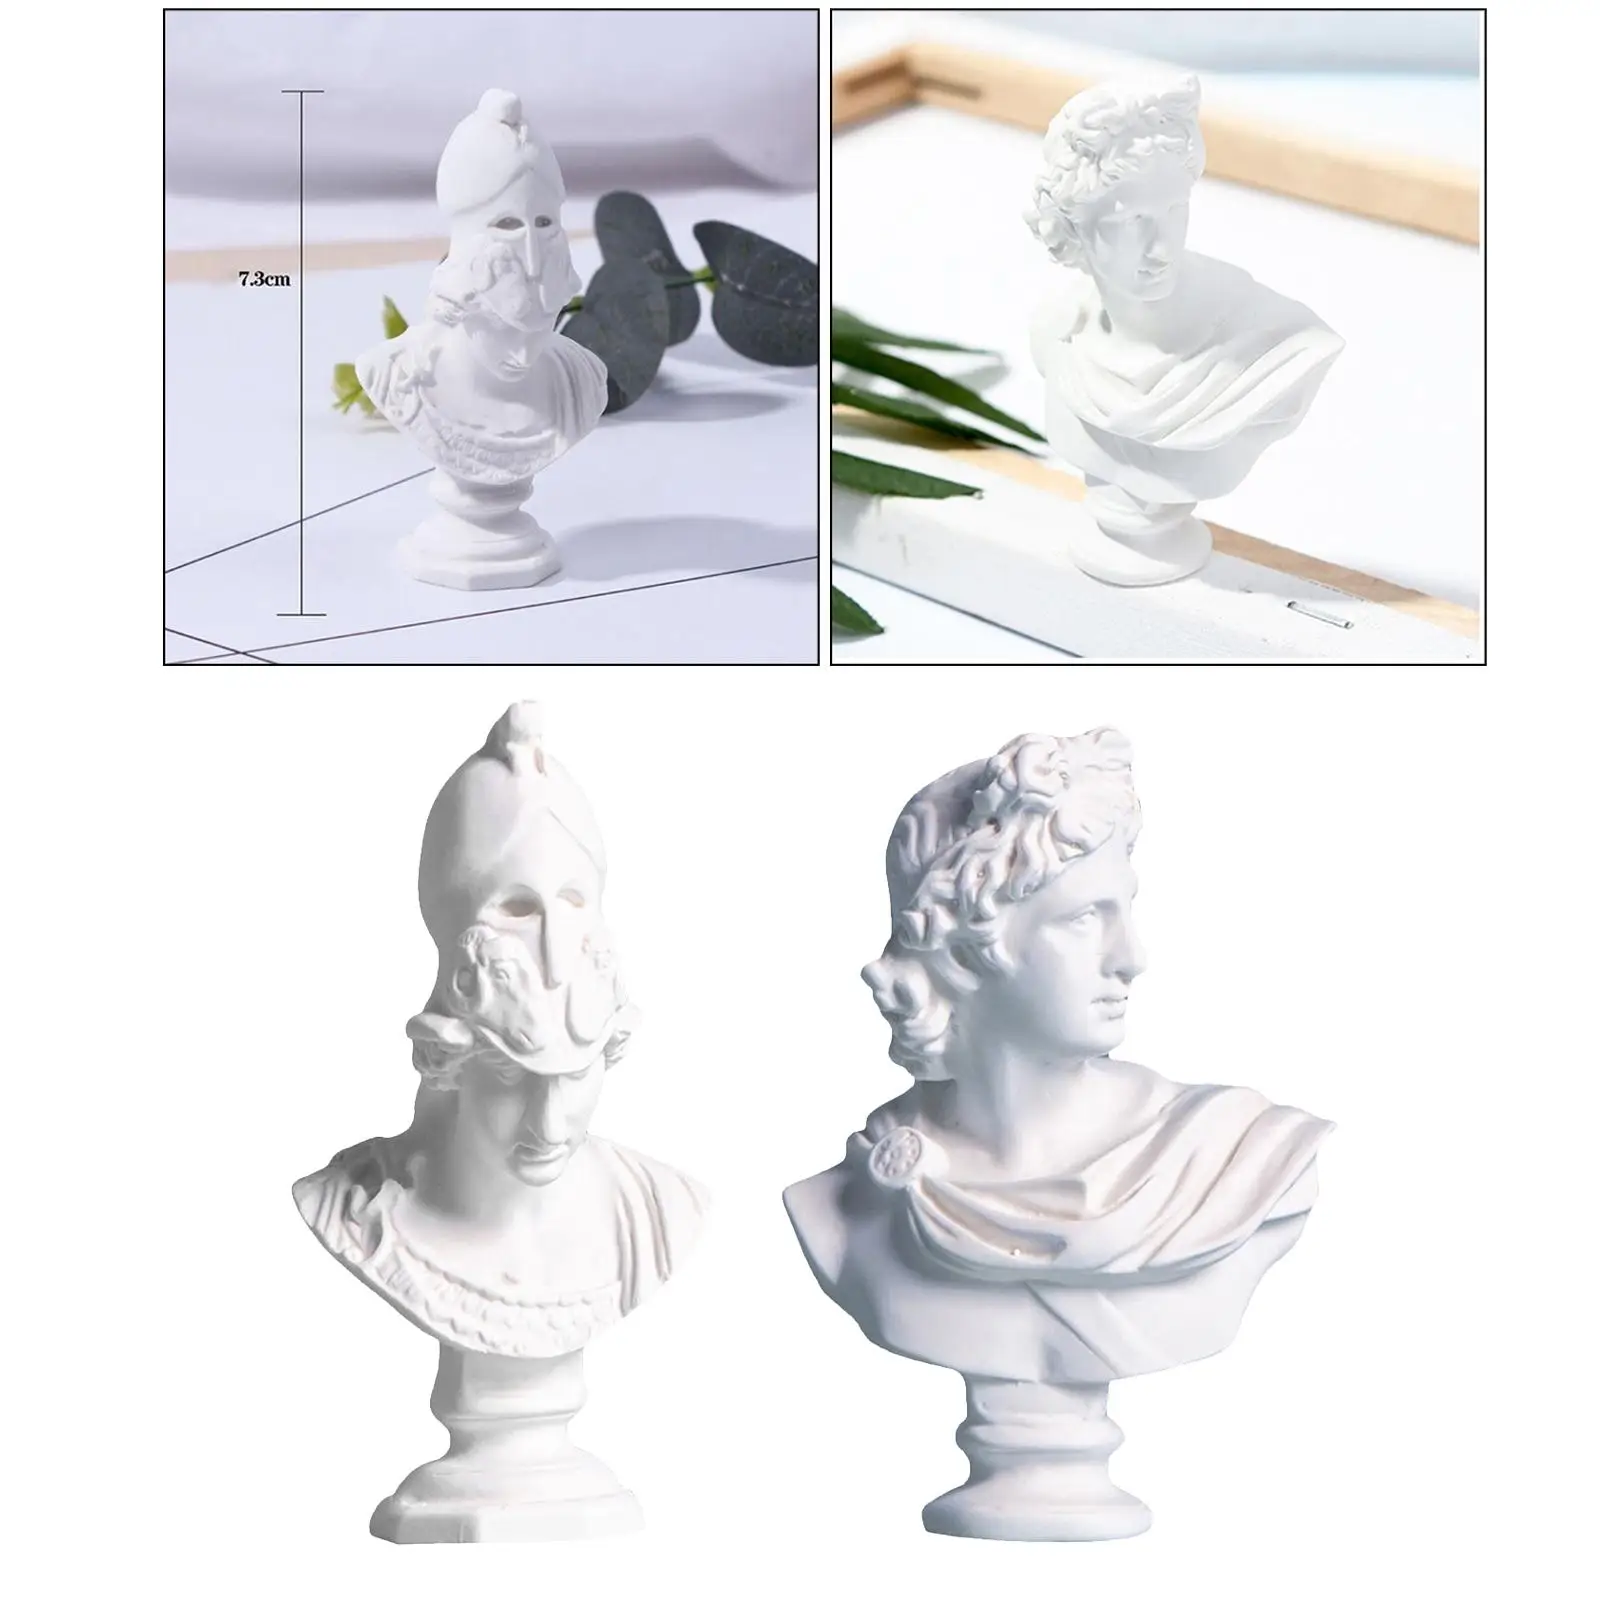 2x Greek Mythology Figurine Plaster Bust Statue Home Decoration,Famous Sculpture Gypsum Portraits Desktop 